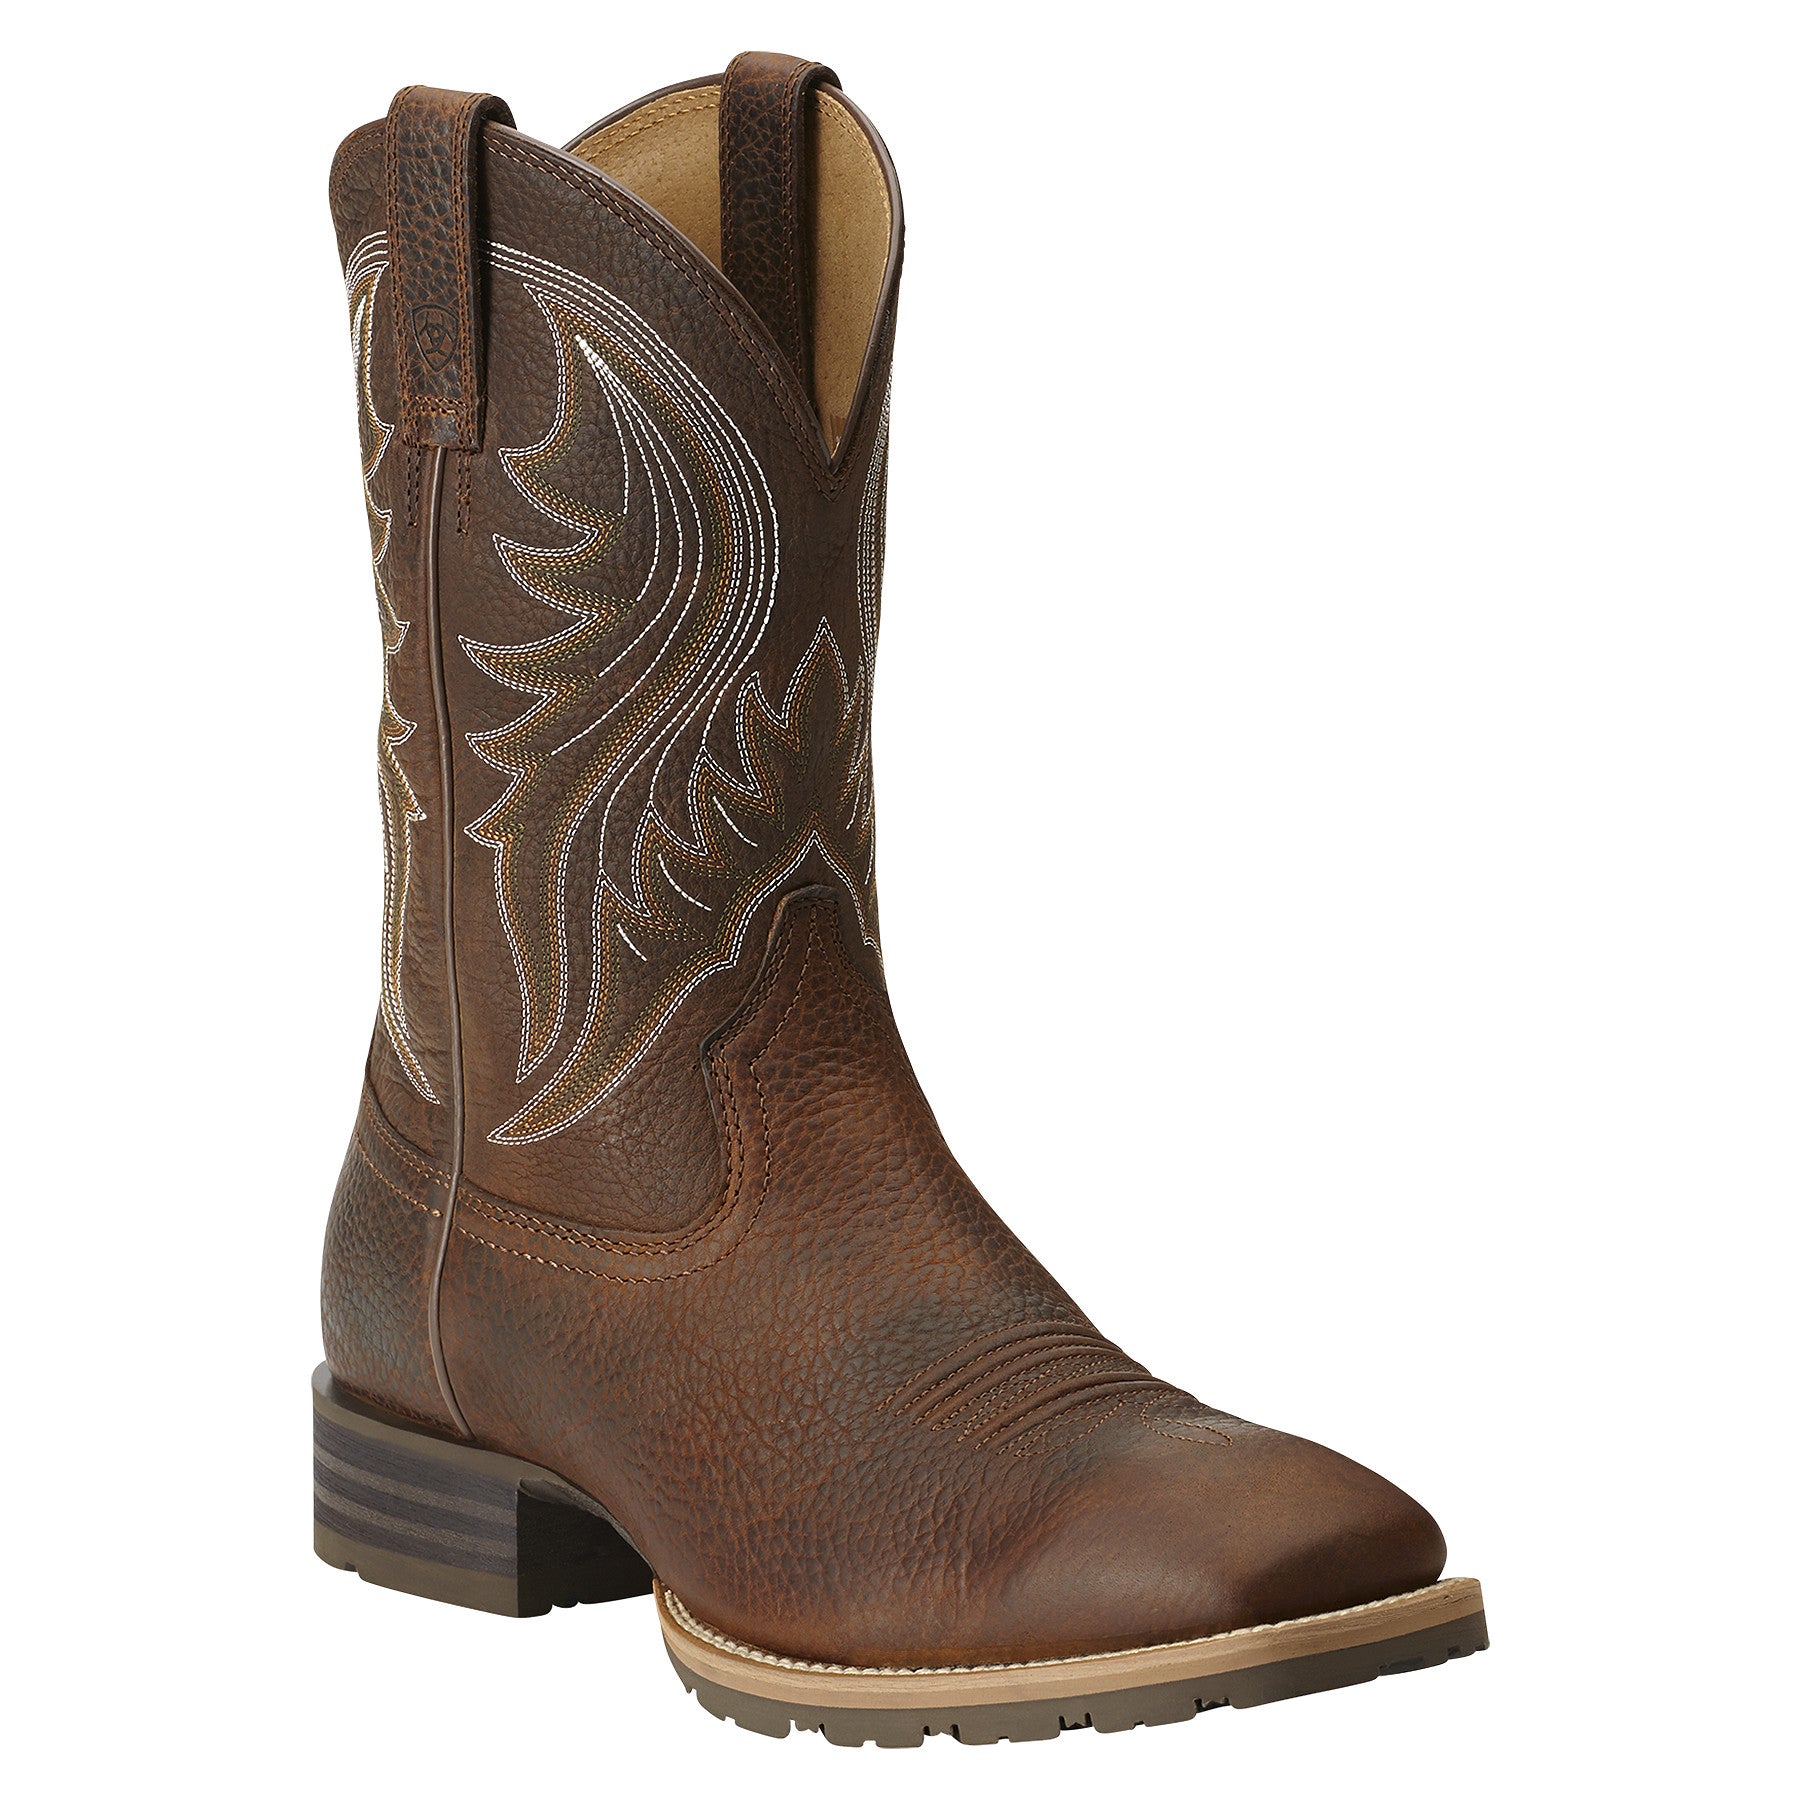 Men's Cowboy Boots: Shop Our Huge Selection & Unique Styles